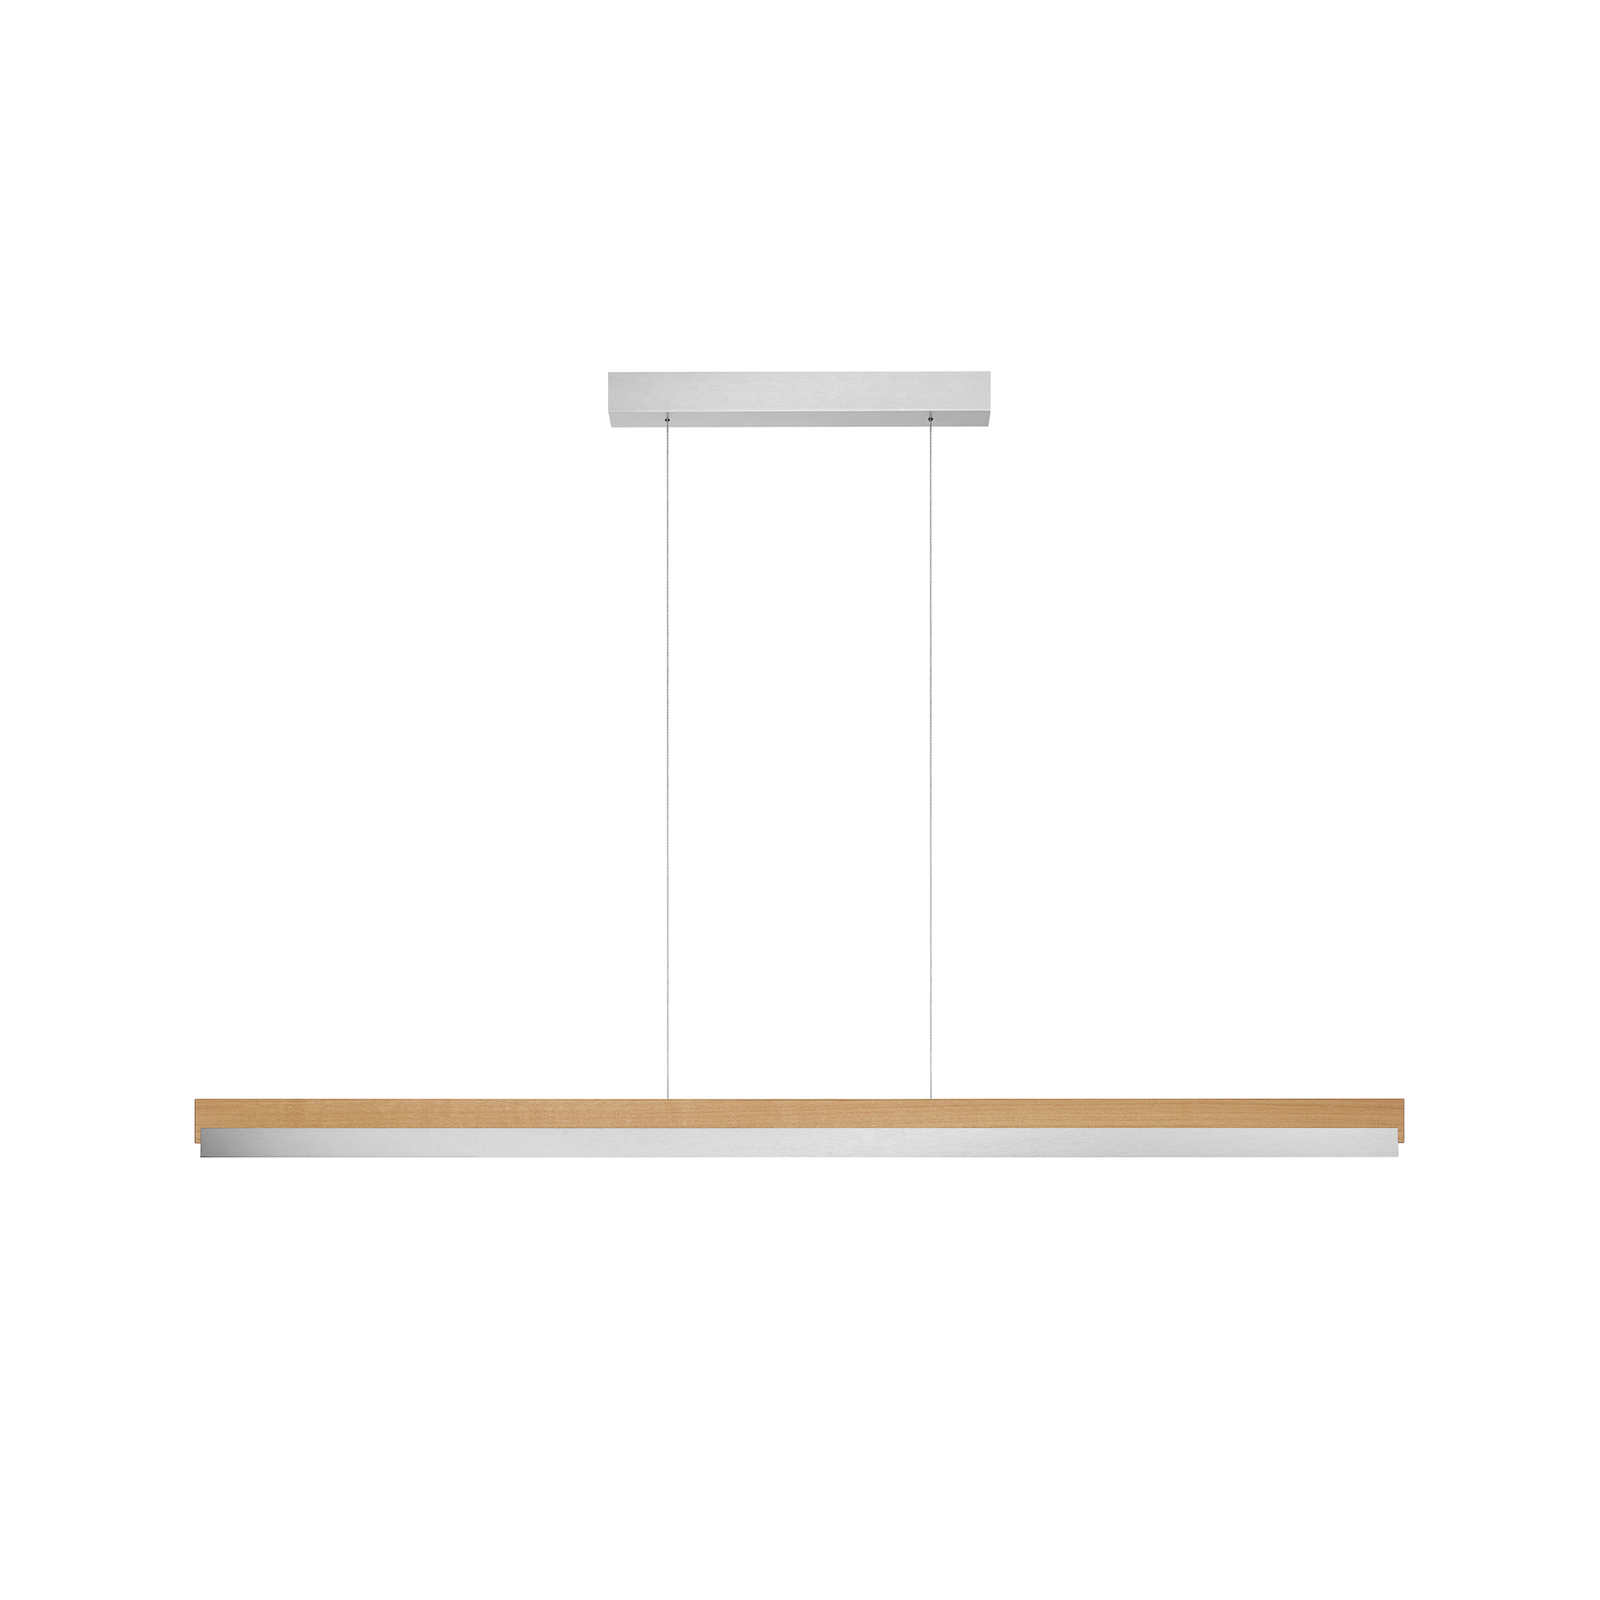 Quitani hanglamp Keijo, nikkel/eiken, 143 cm